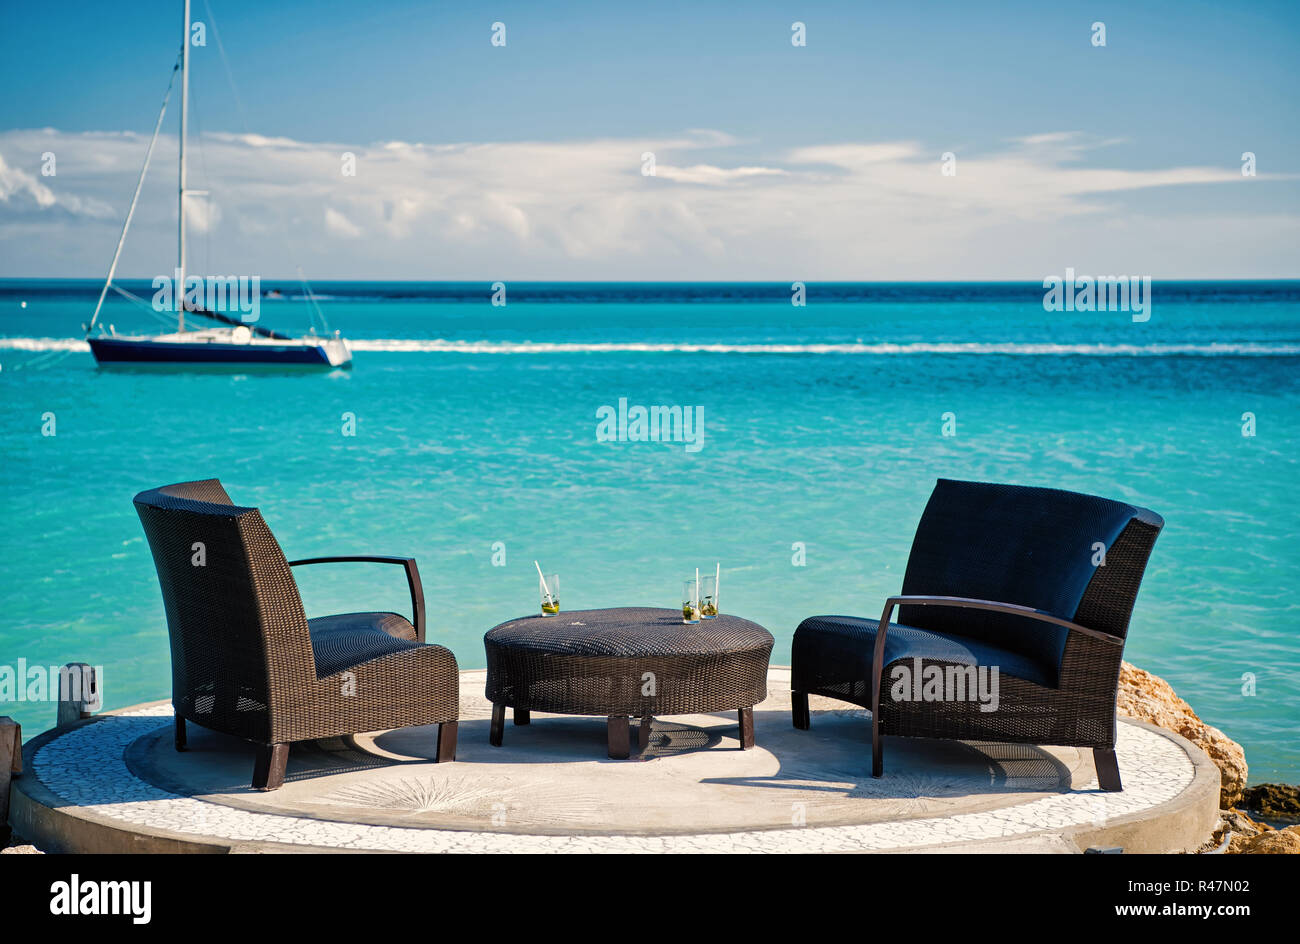 Poltrone e tavolo sulla spiaggia tropicale in st Johns, Antigua. Arredamento di rattan e yacht in mare turchese o acqua oceanica. Vacanze estive sui Caraibi. Foto Stock